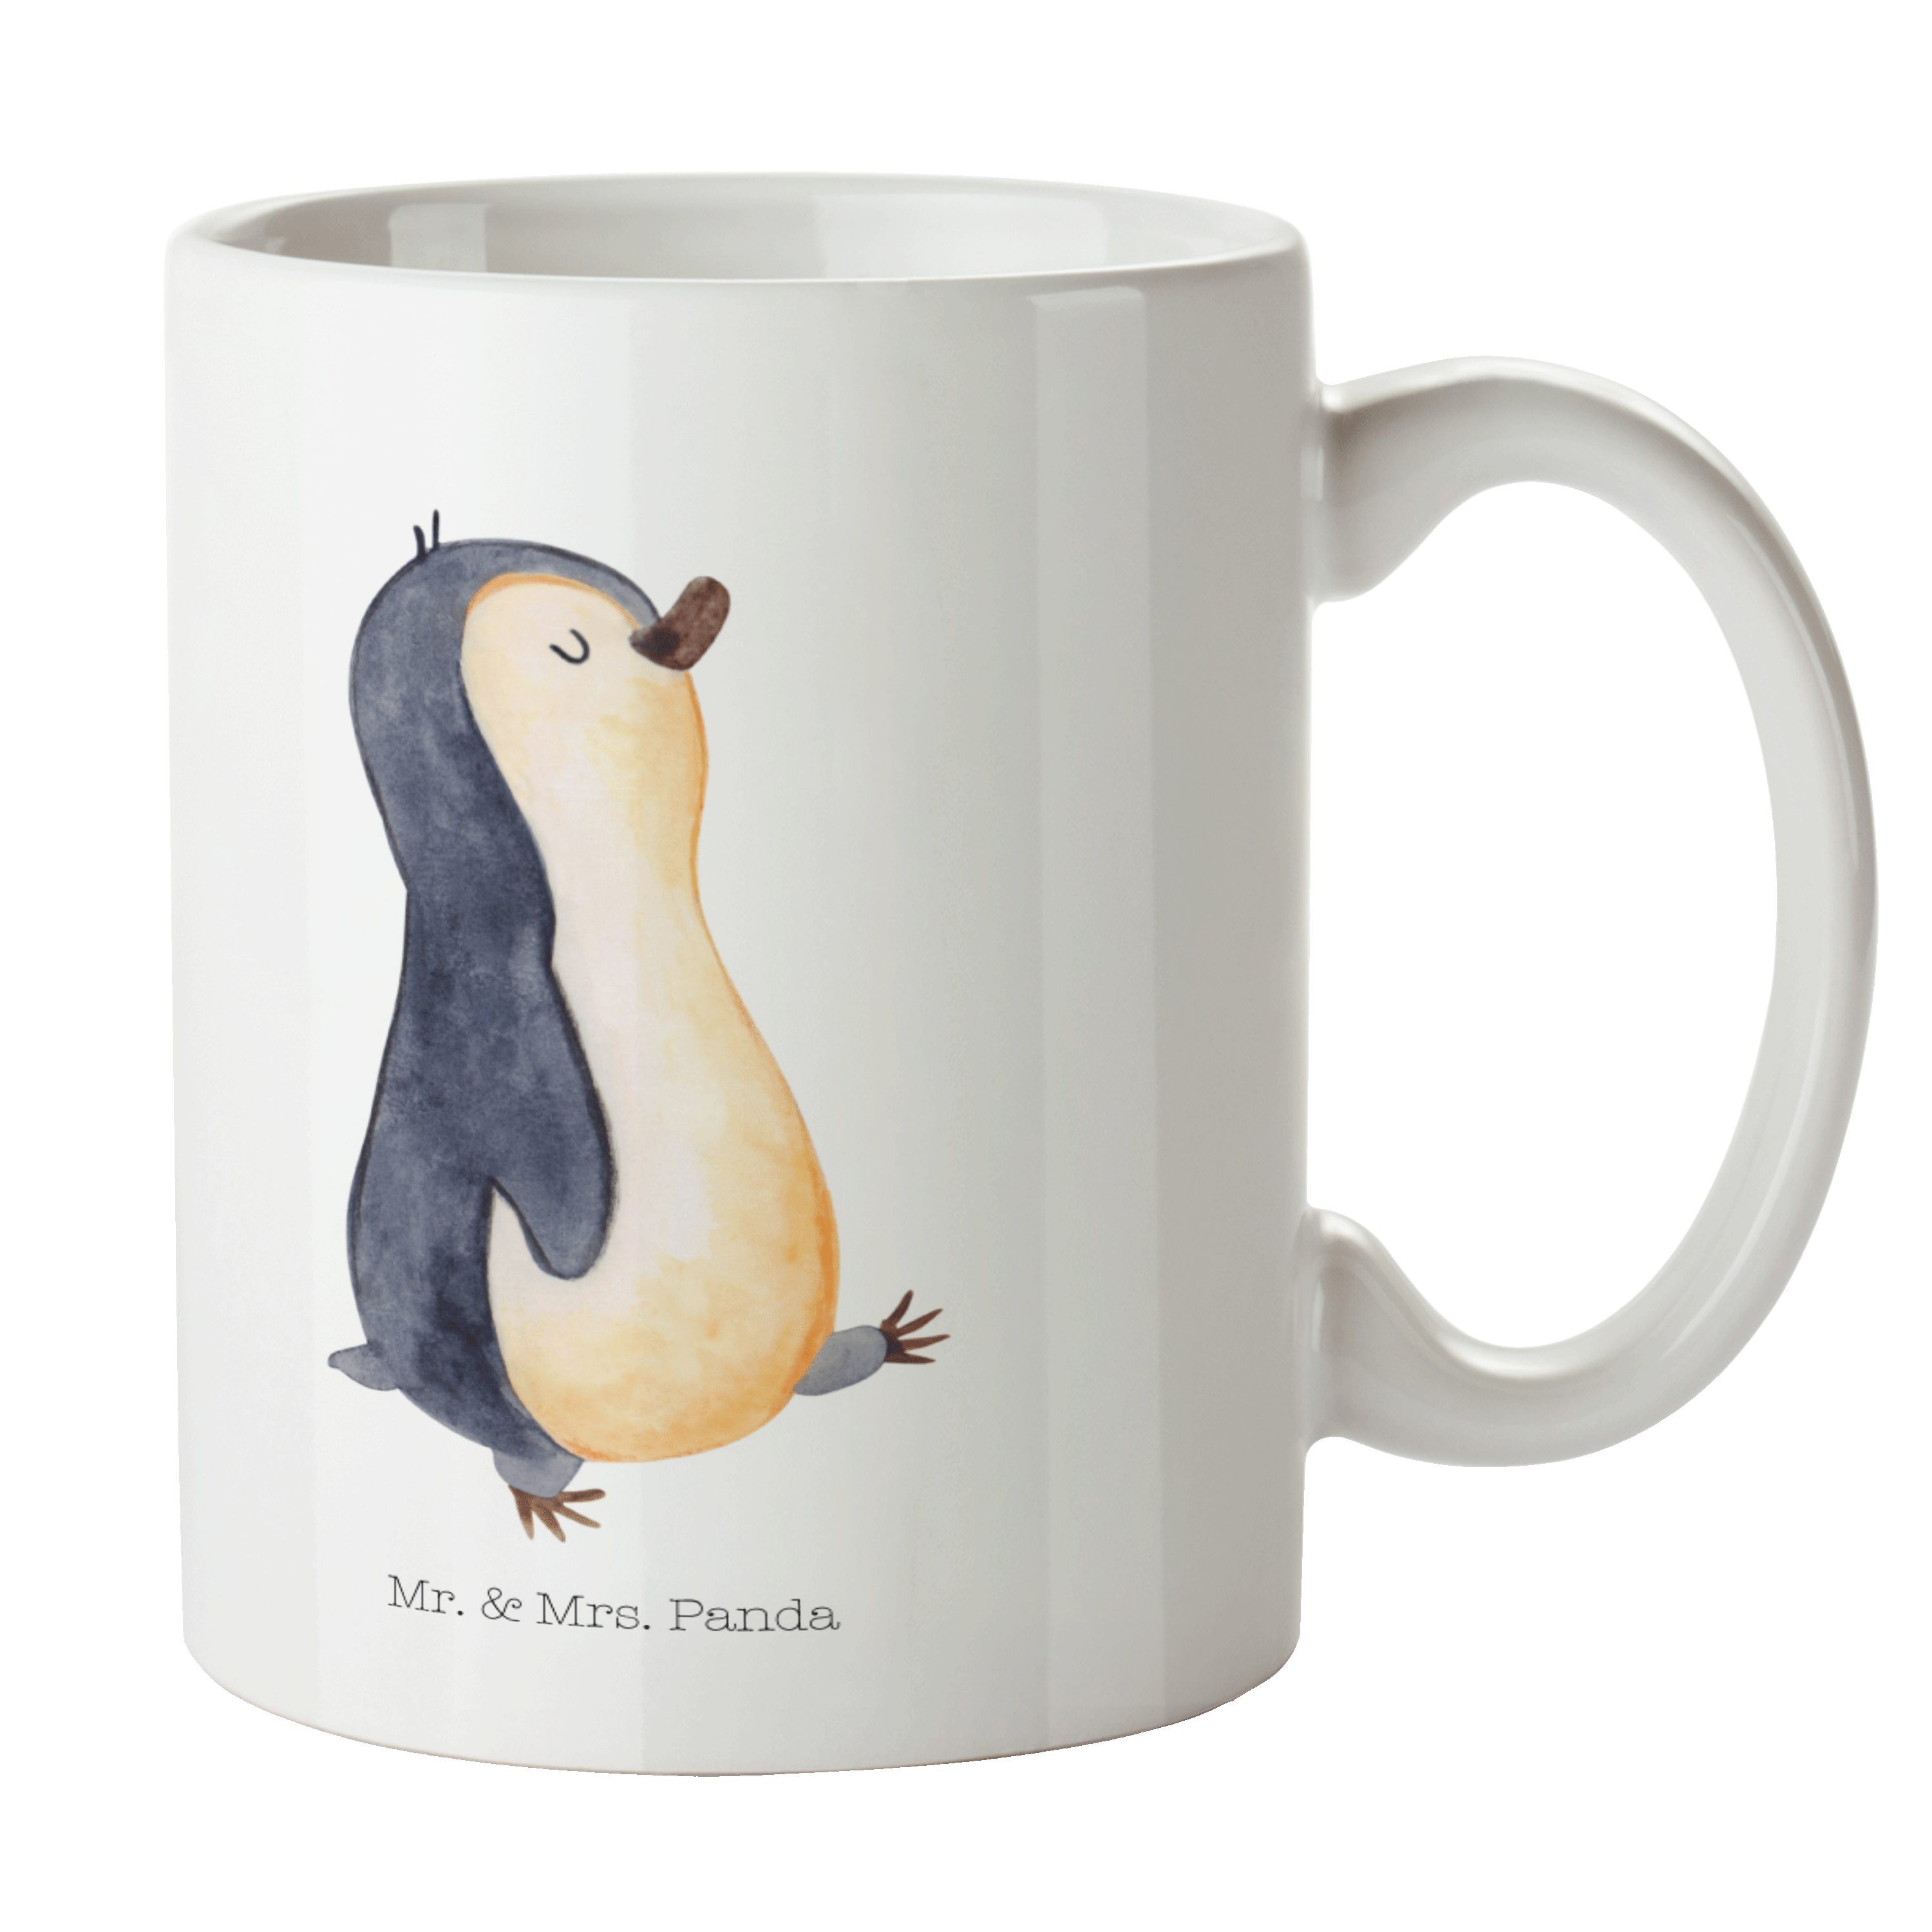 Mr. & Mrs. Panda Tasse Pinguin marschierend - Weiß - Geschenk, Tasse Sprüche, Porzellantasse, Keramik